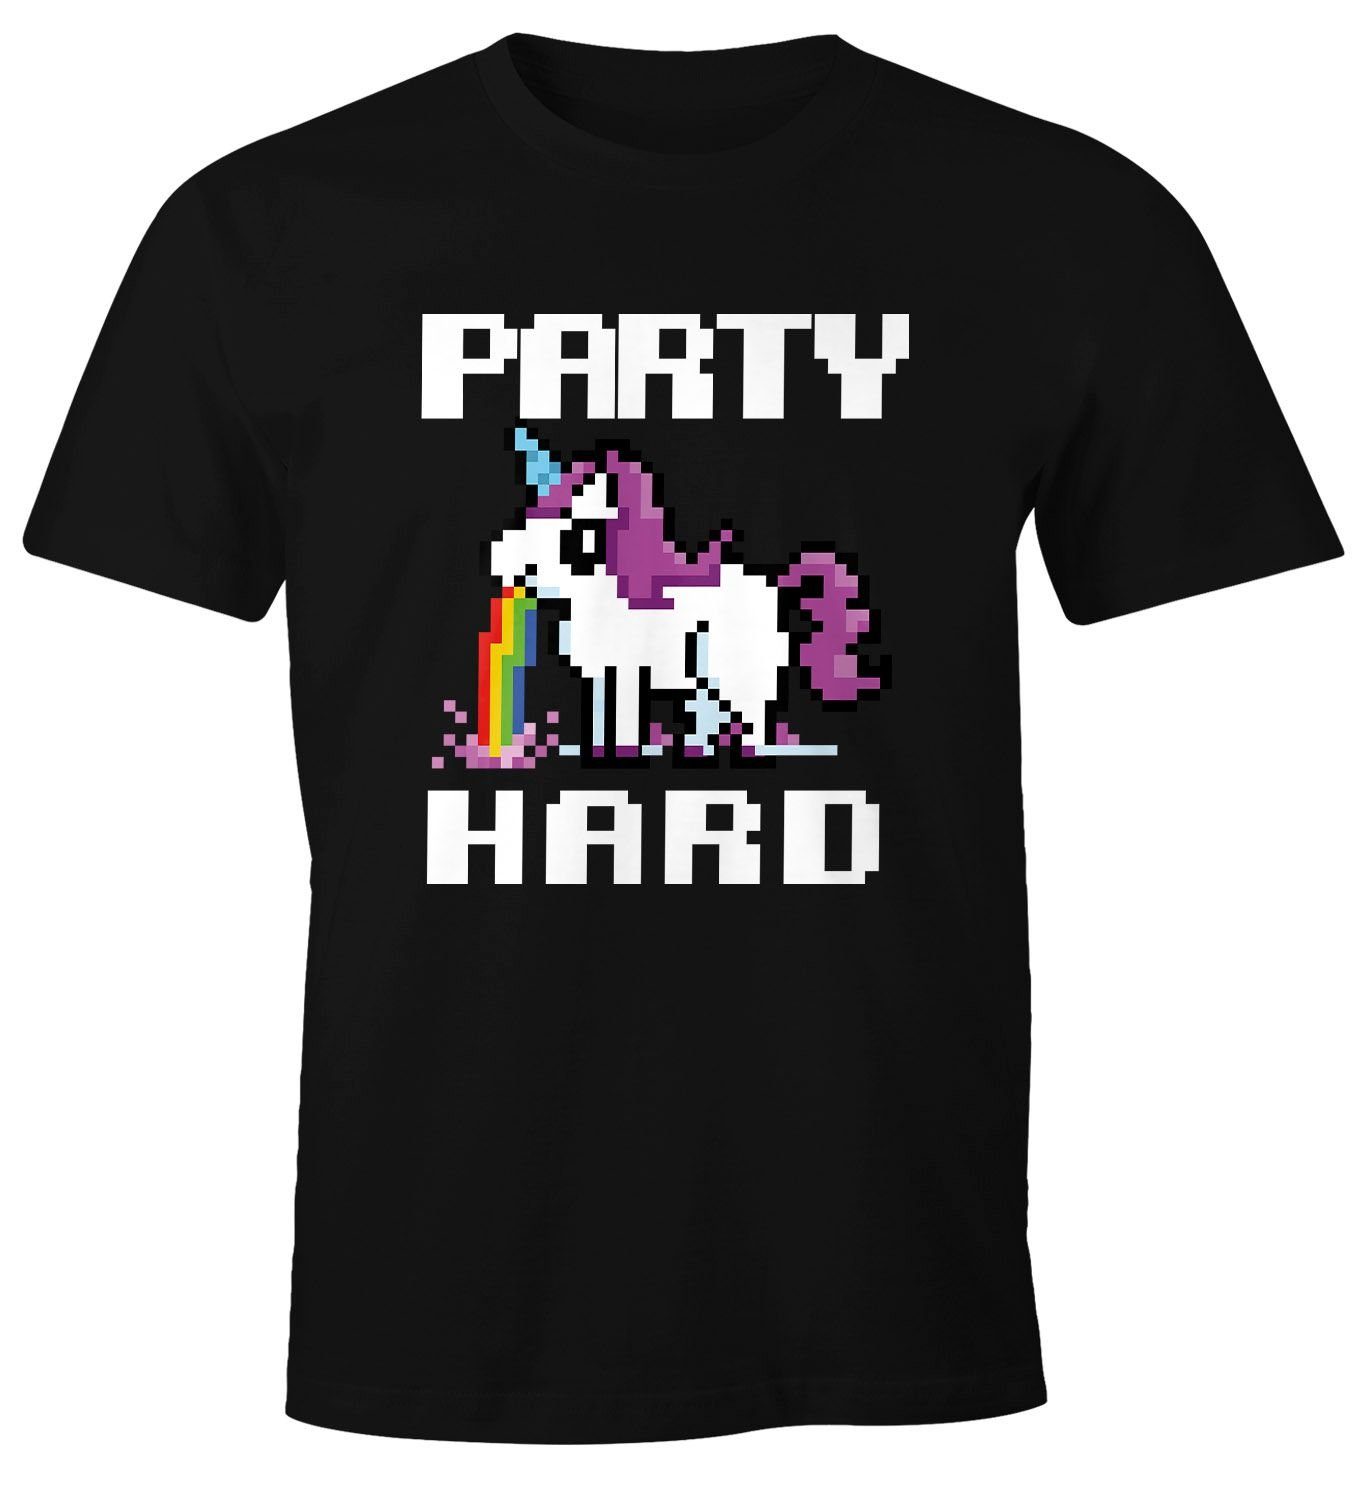 Herren Hard kotzendes Print-Shirt Spruch Moonworks® mit T-Shirt Fun-Shirt Saufsprüche Print MoonWorks Party Einhorn lustig